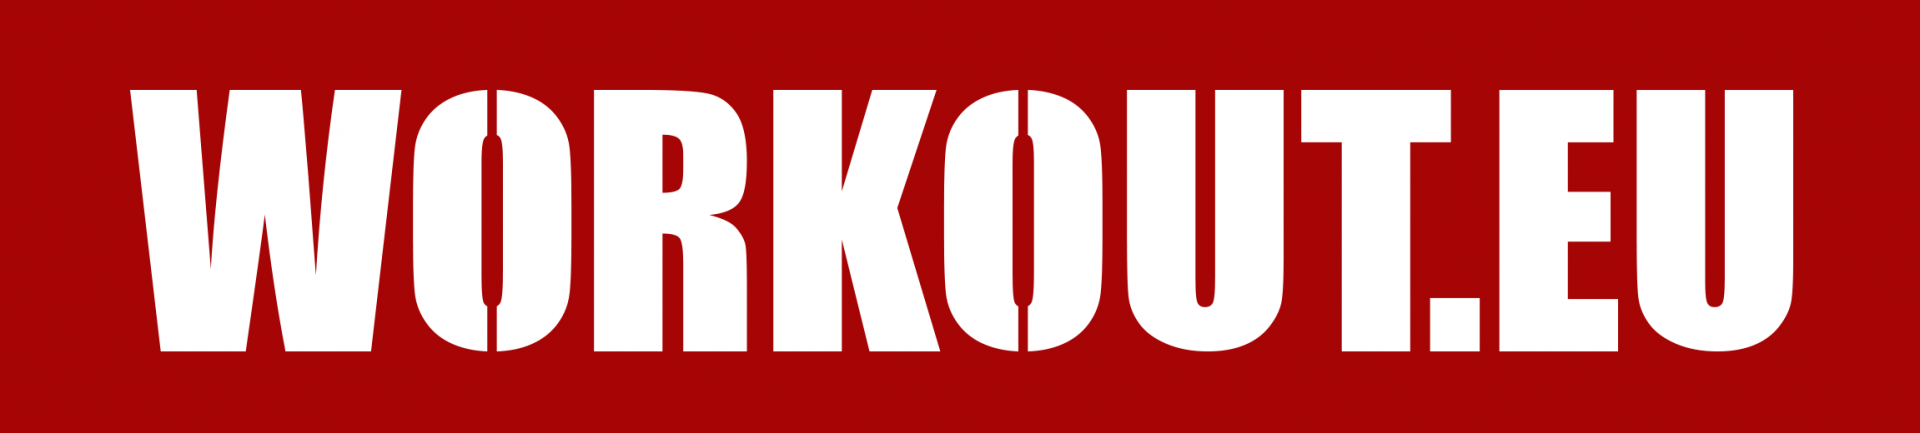 Workout logo red